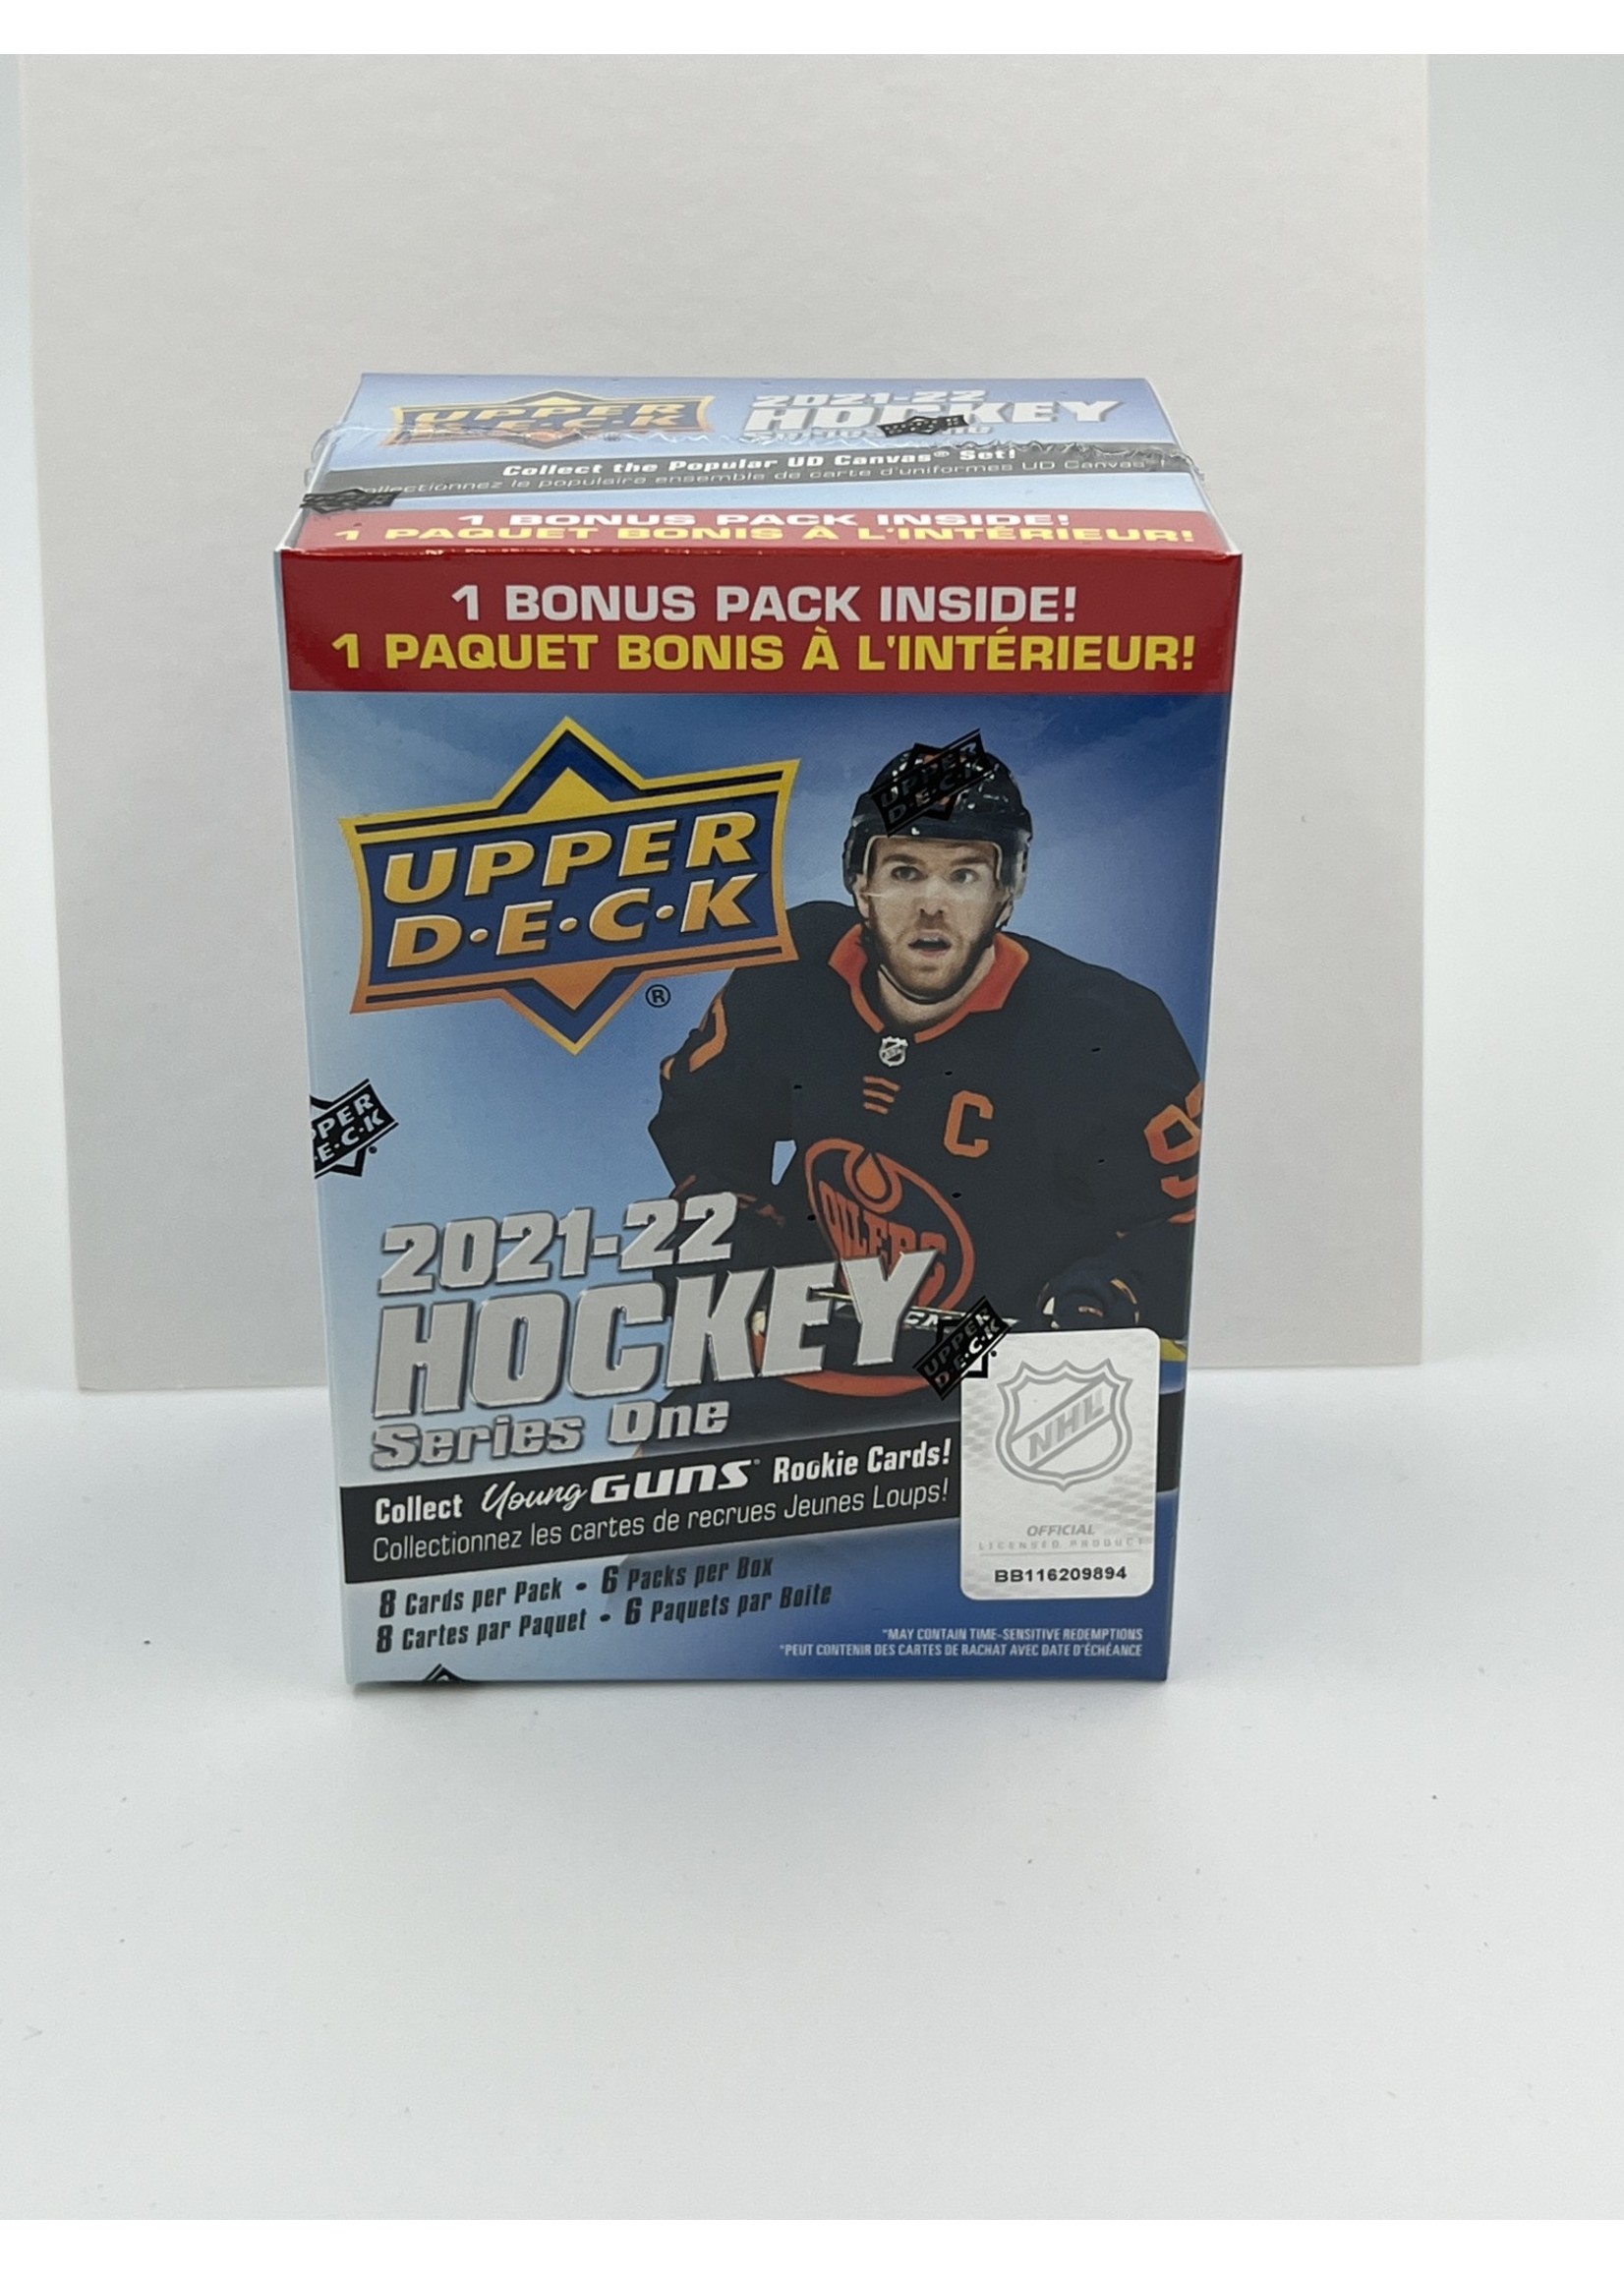 Upper Deck   2021 22 Upper Deck Hockey Series One Blaster Box